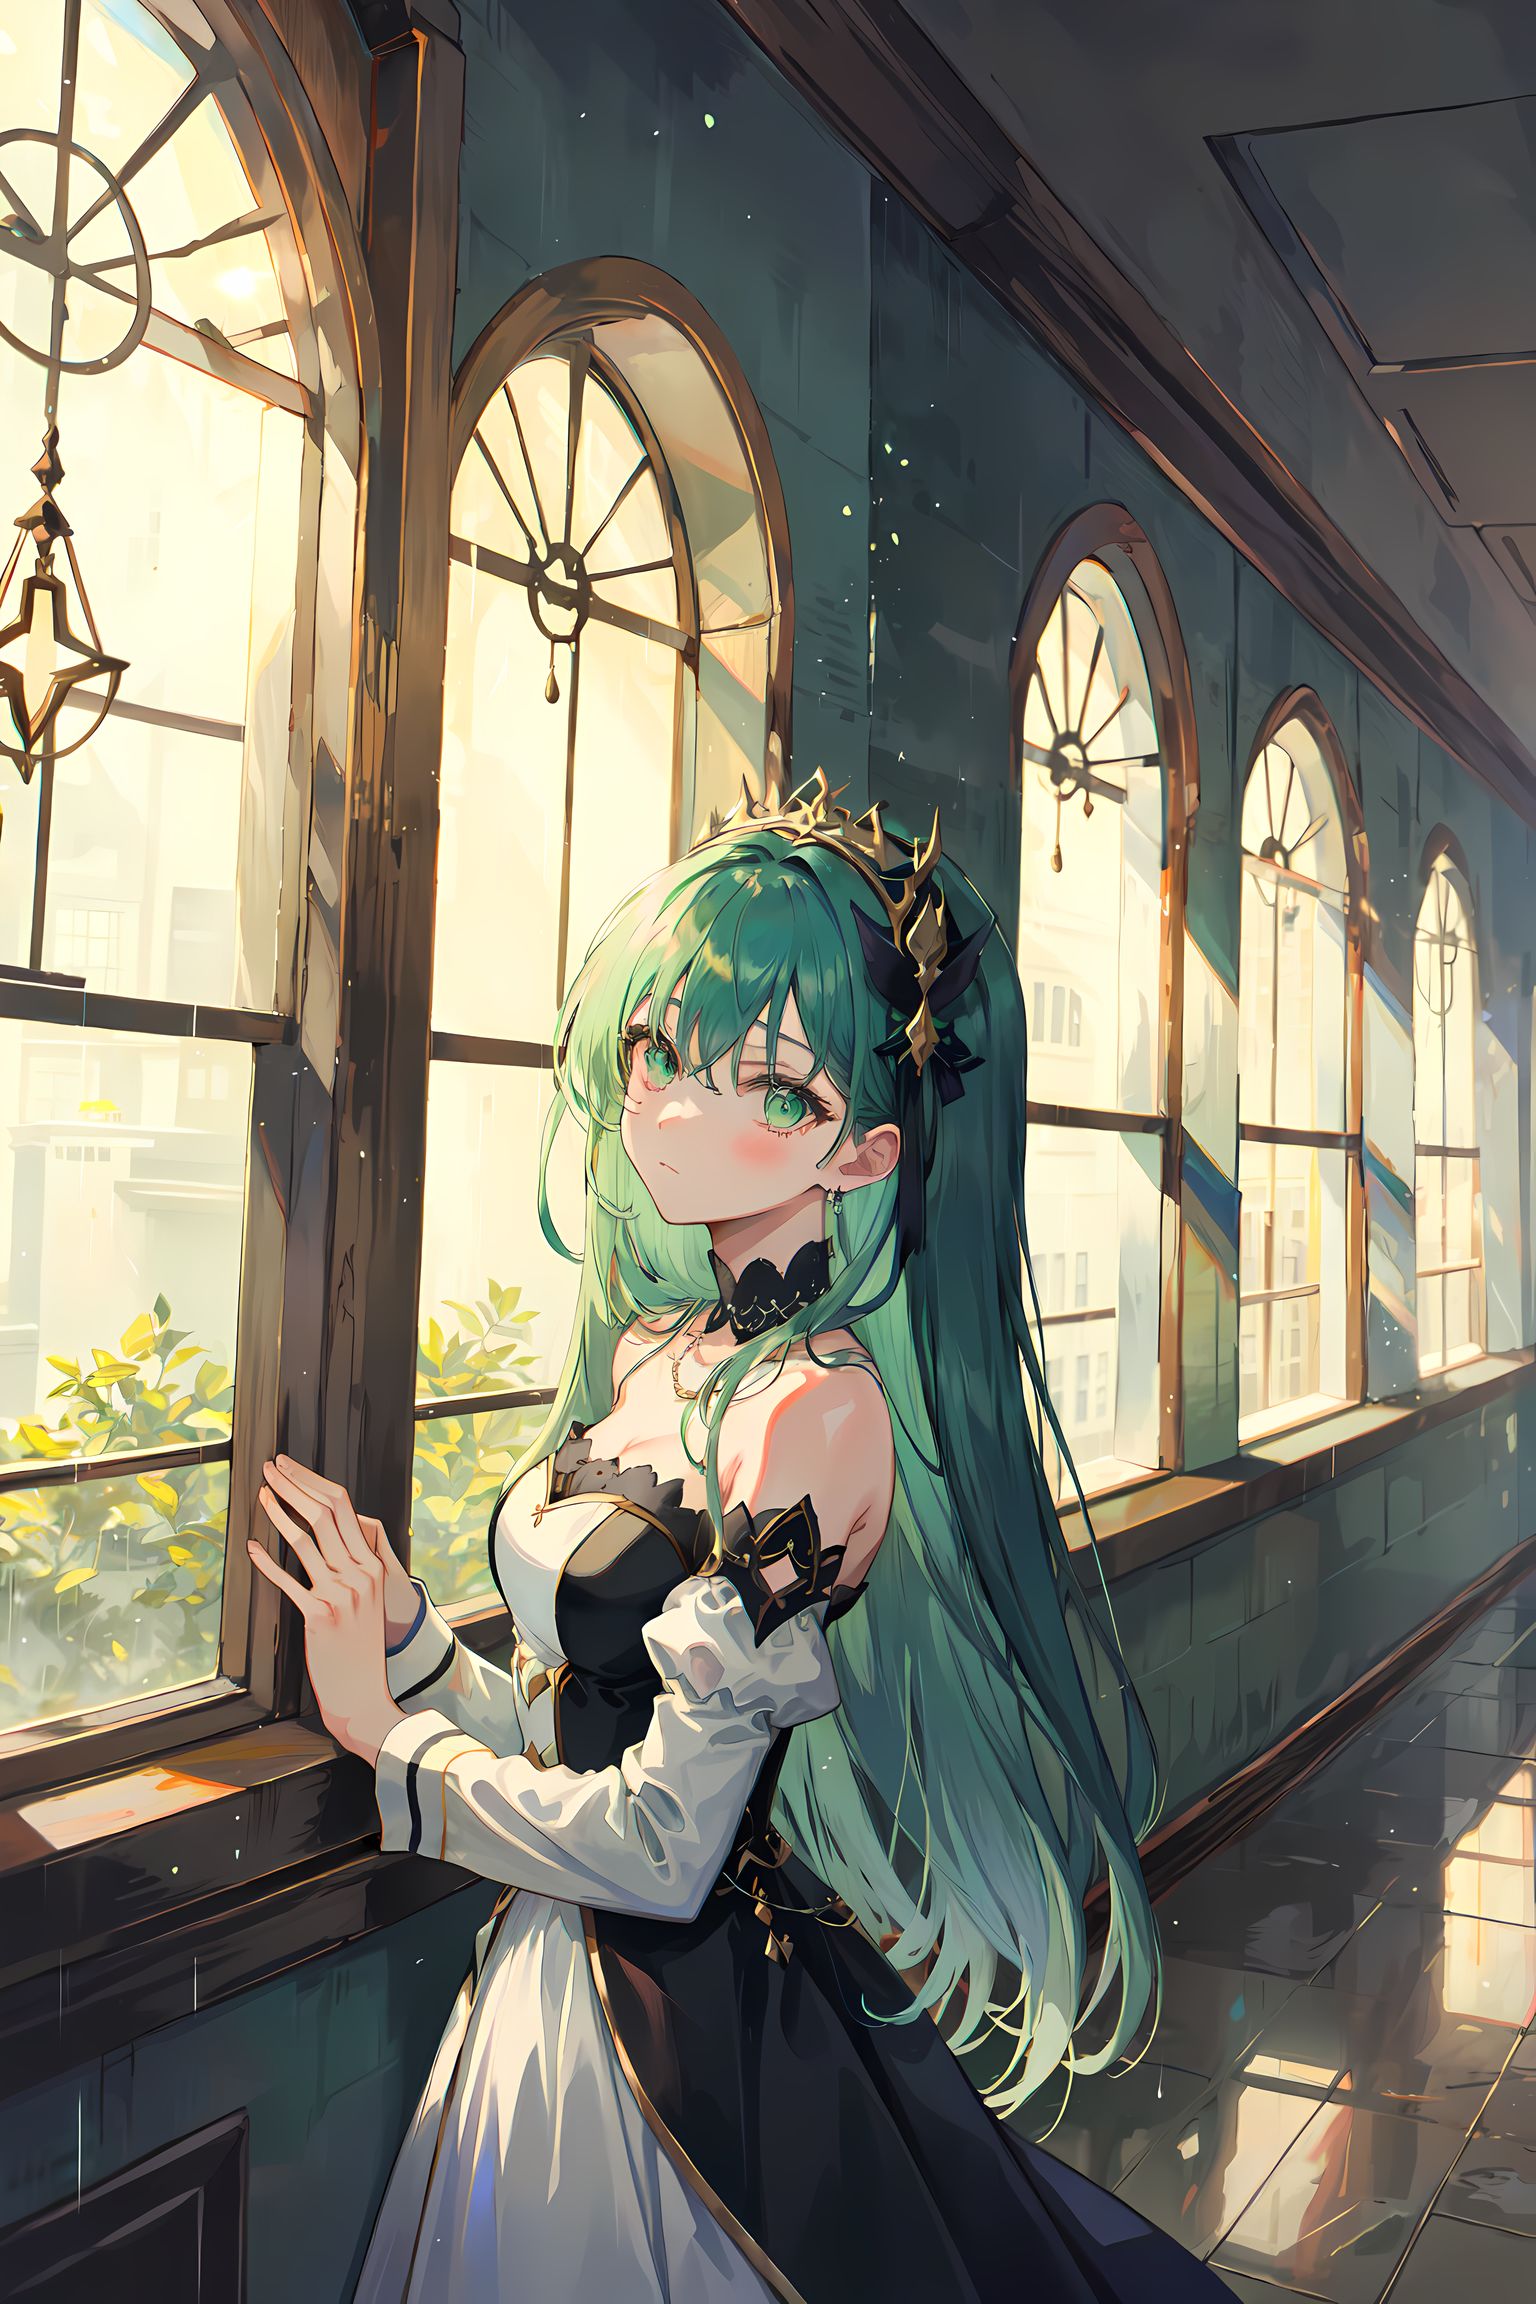 窗边少女独舞，翠绿长发长袖美丽盈胸。